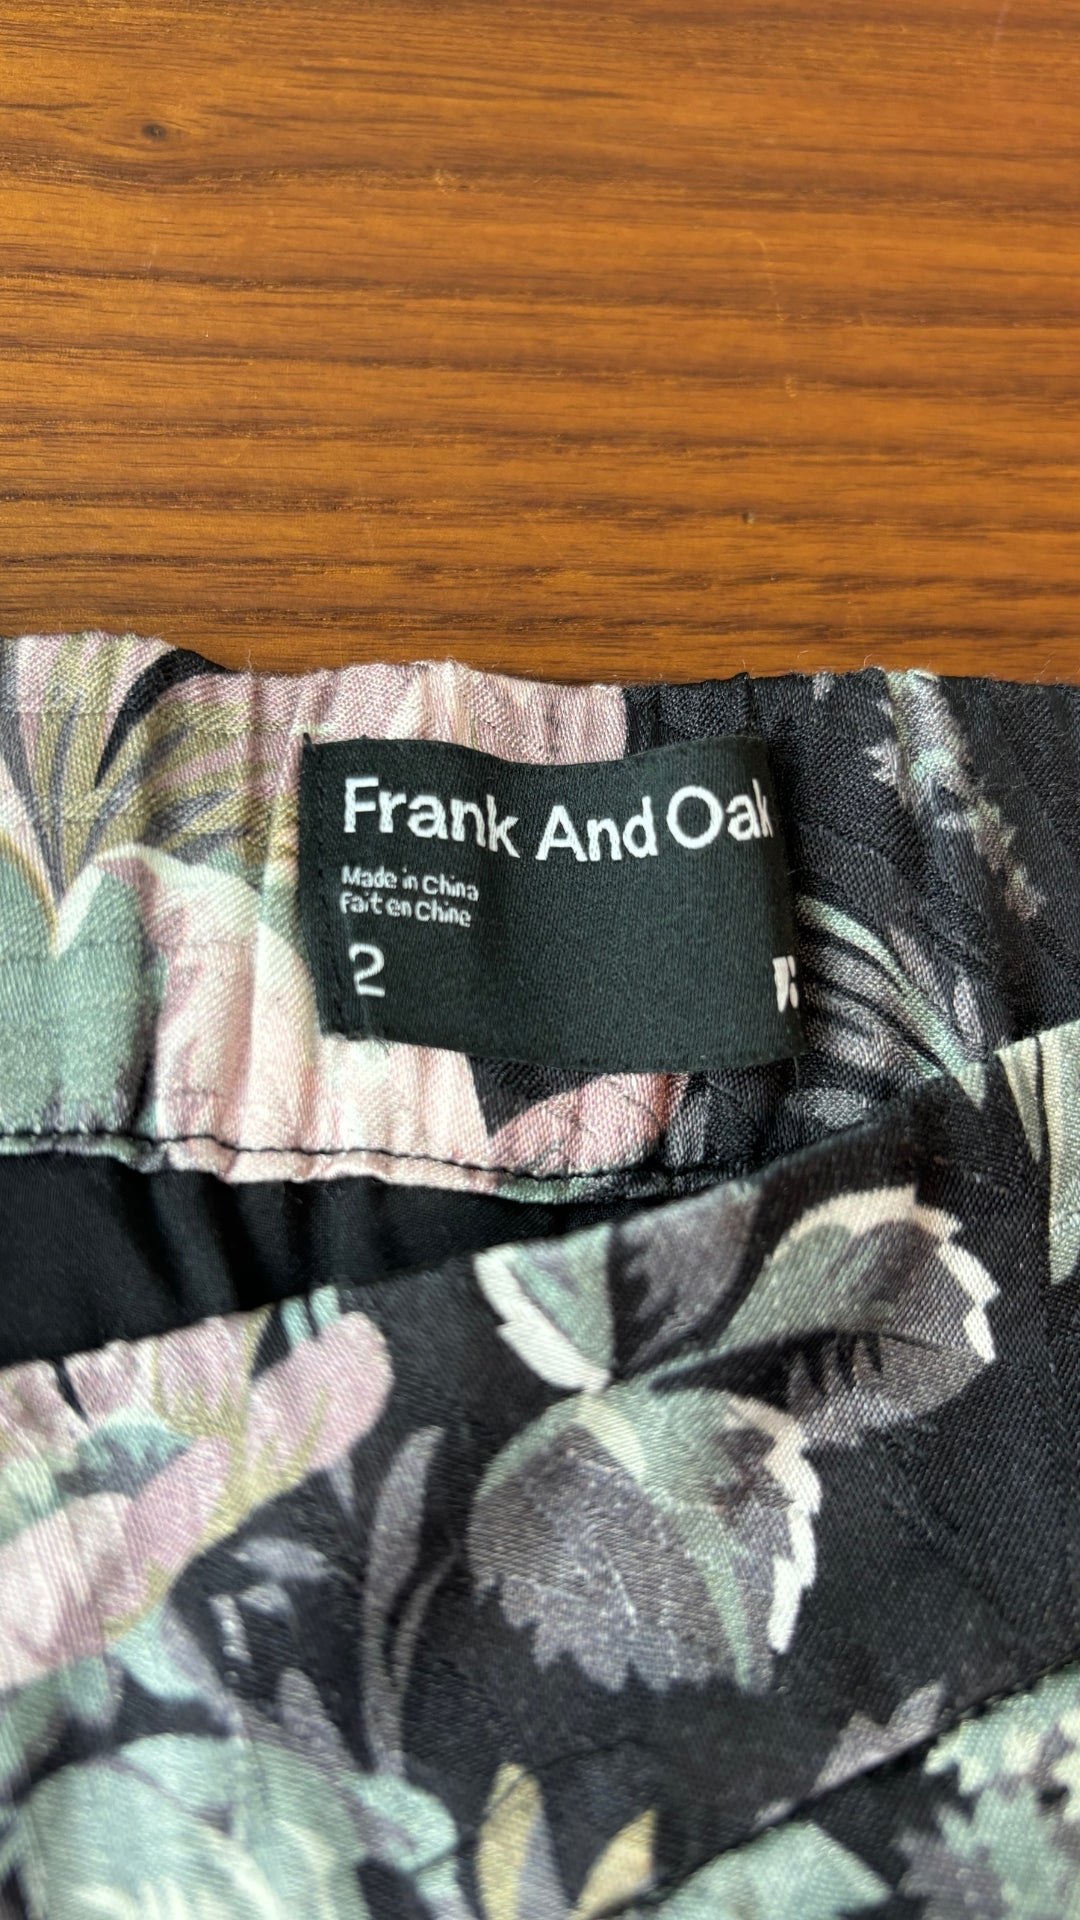 Pantalon floral confortable Frank and Oak, taille 2 (xs/s). Vue de l'étiquette de marque.